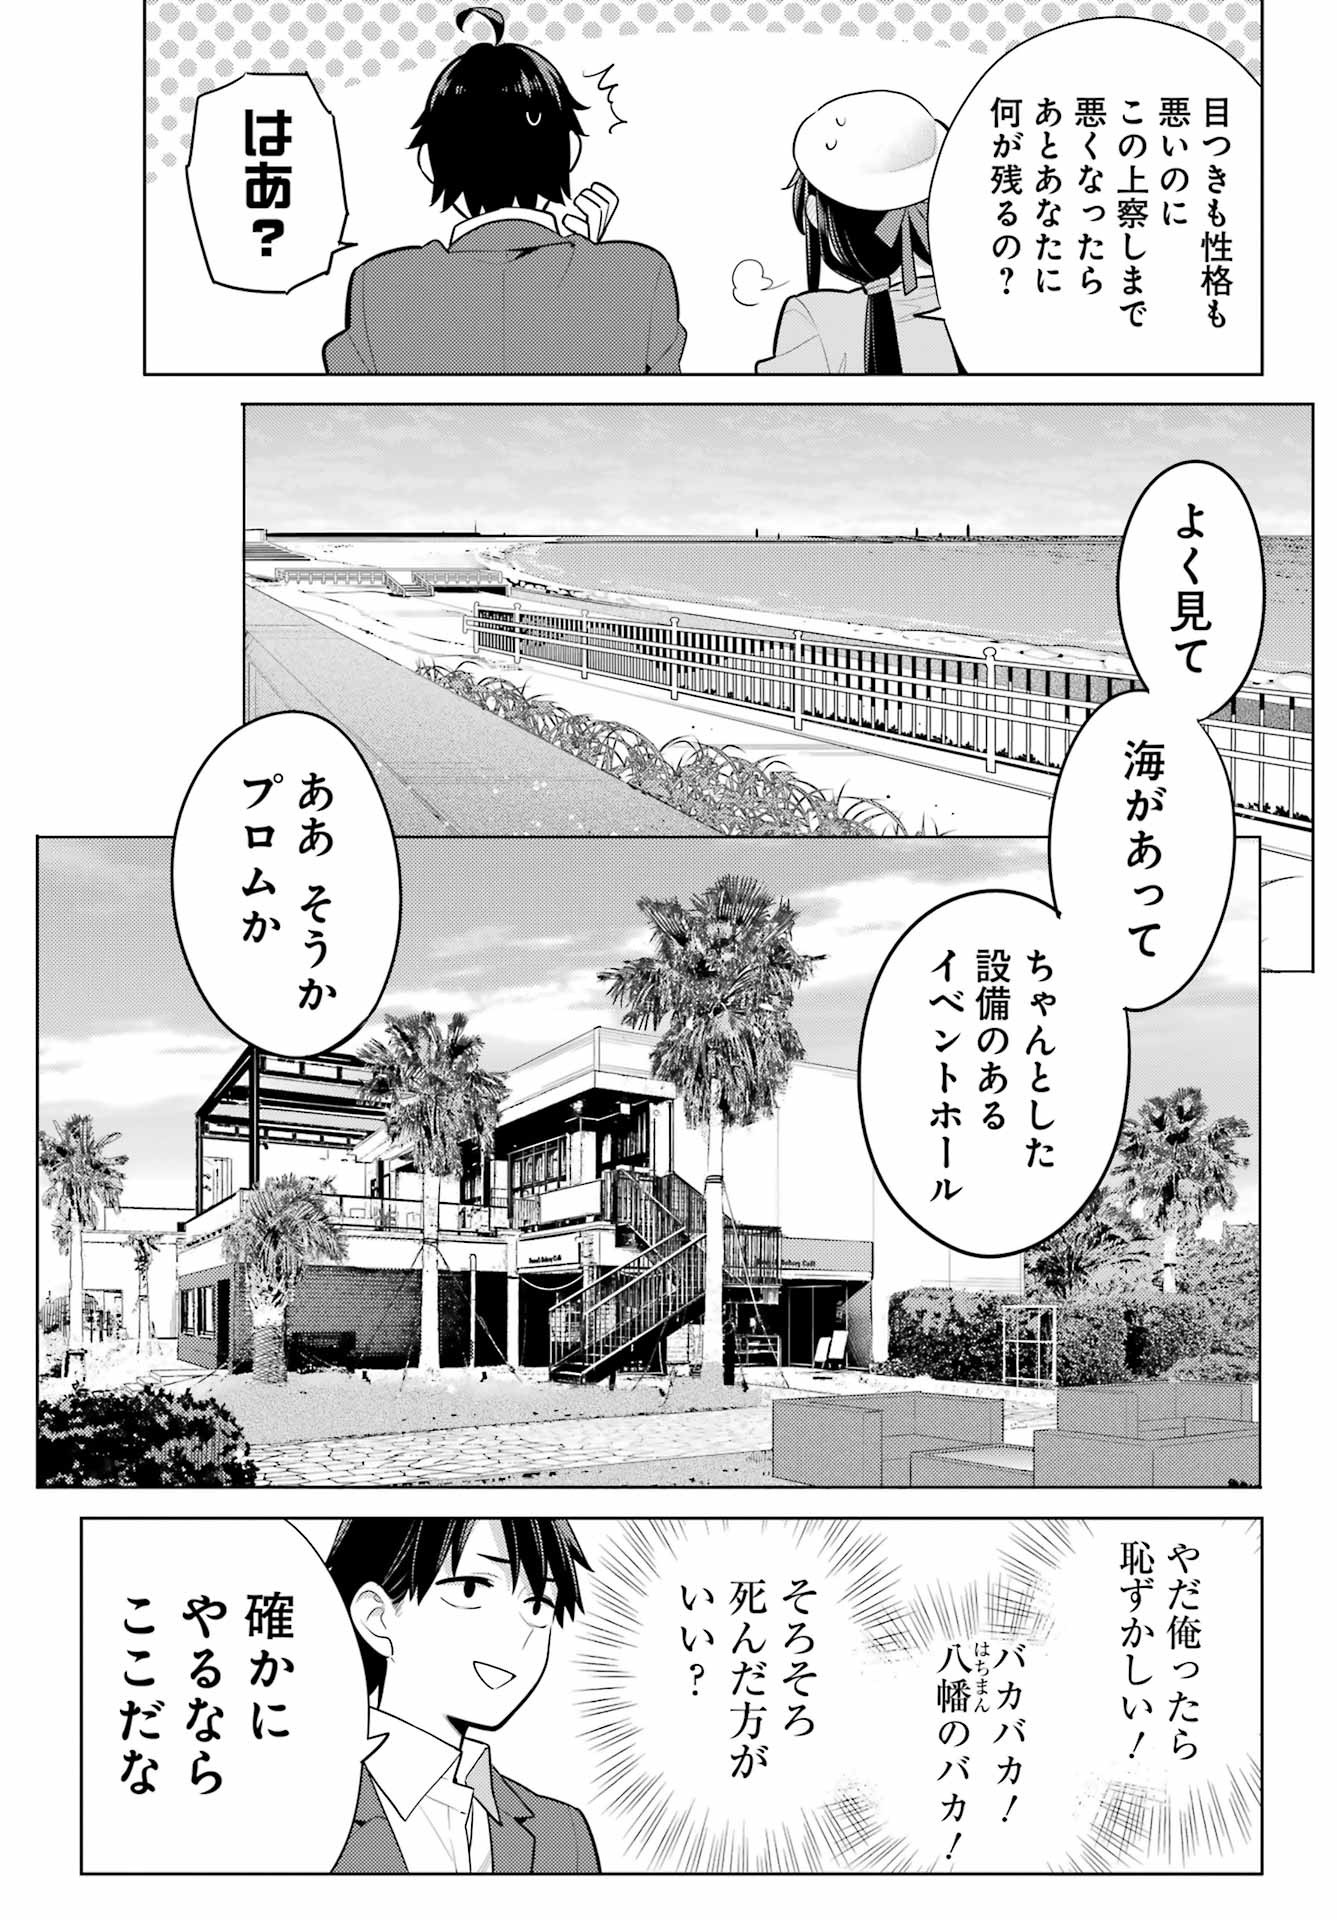 Yahari Ore no Seishun Rabukome wa Machigatte Iru. - Monologue - Chapter 110 - Page 24